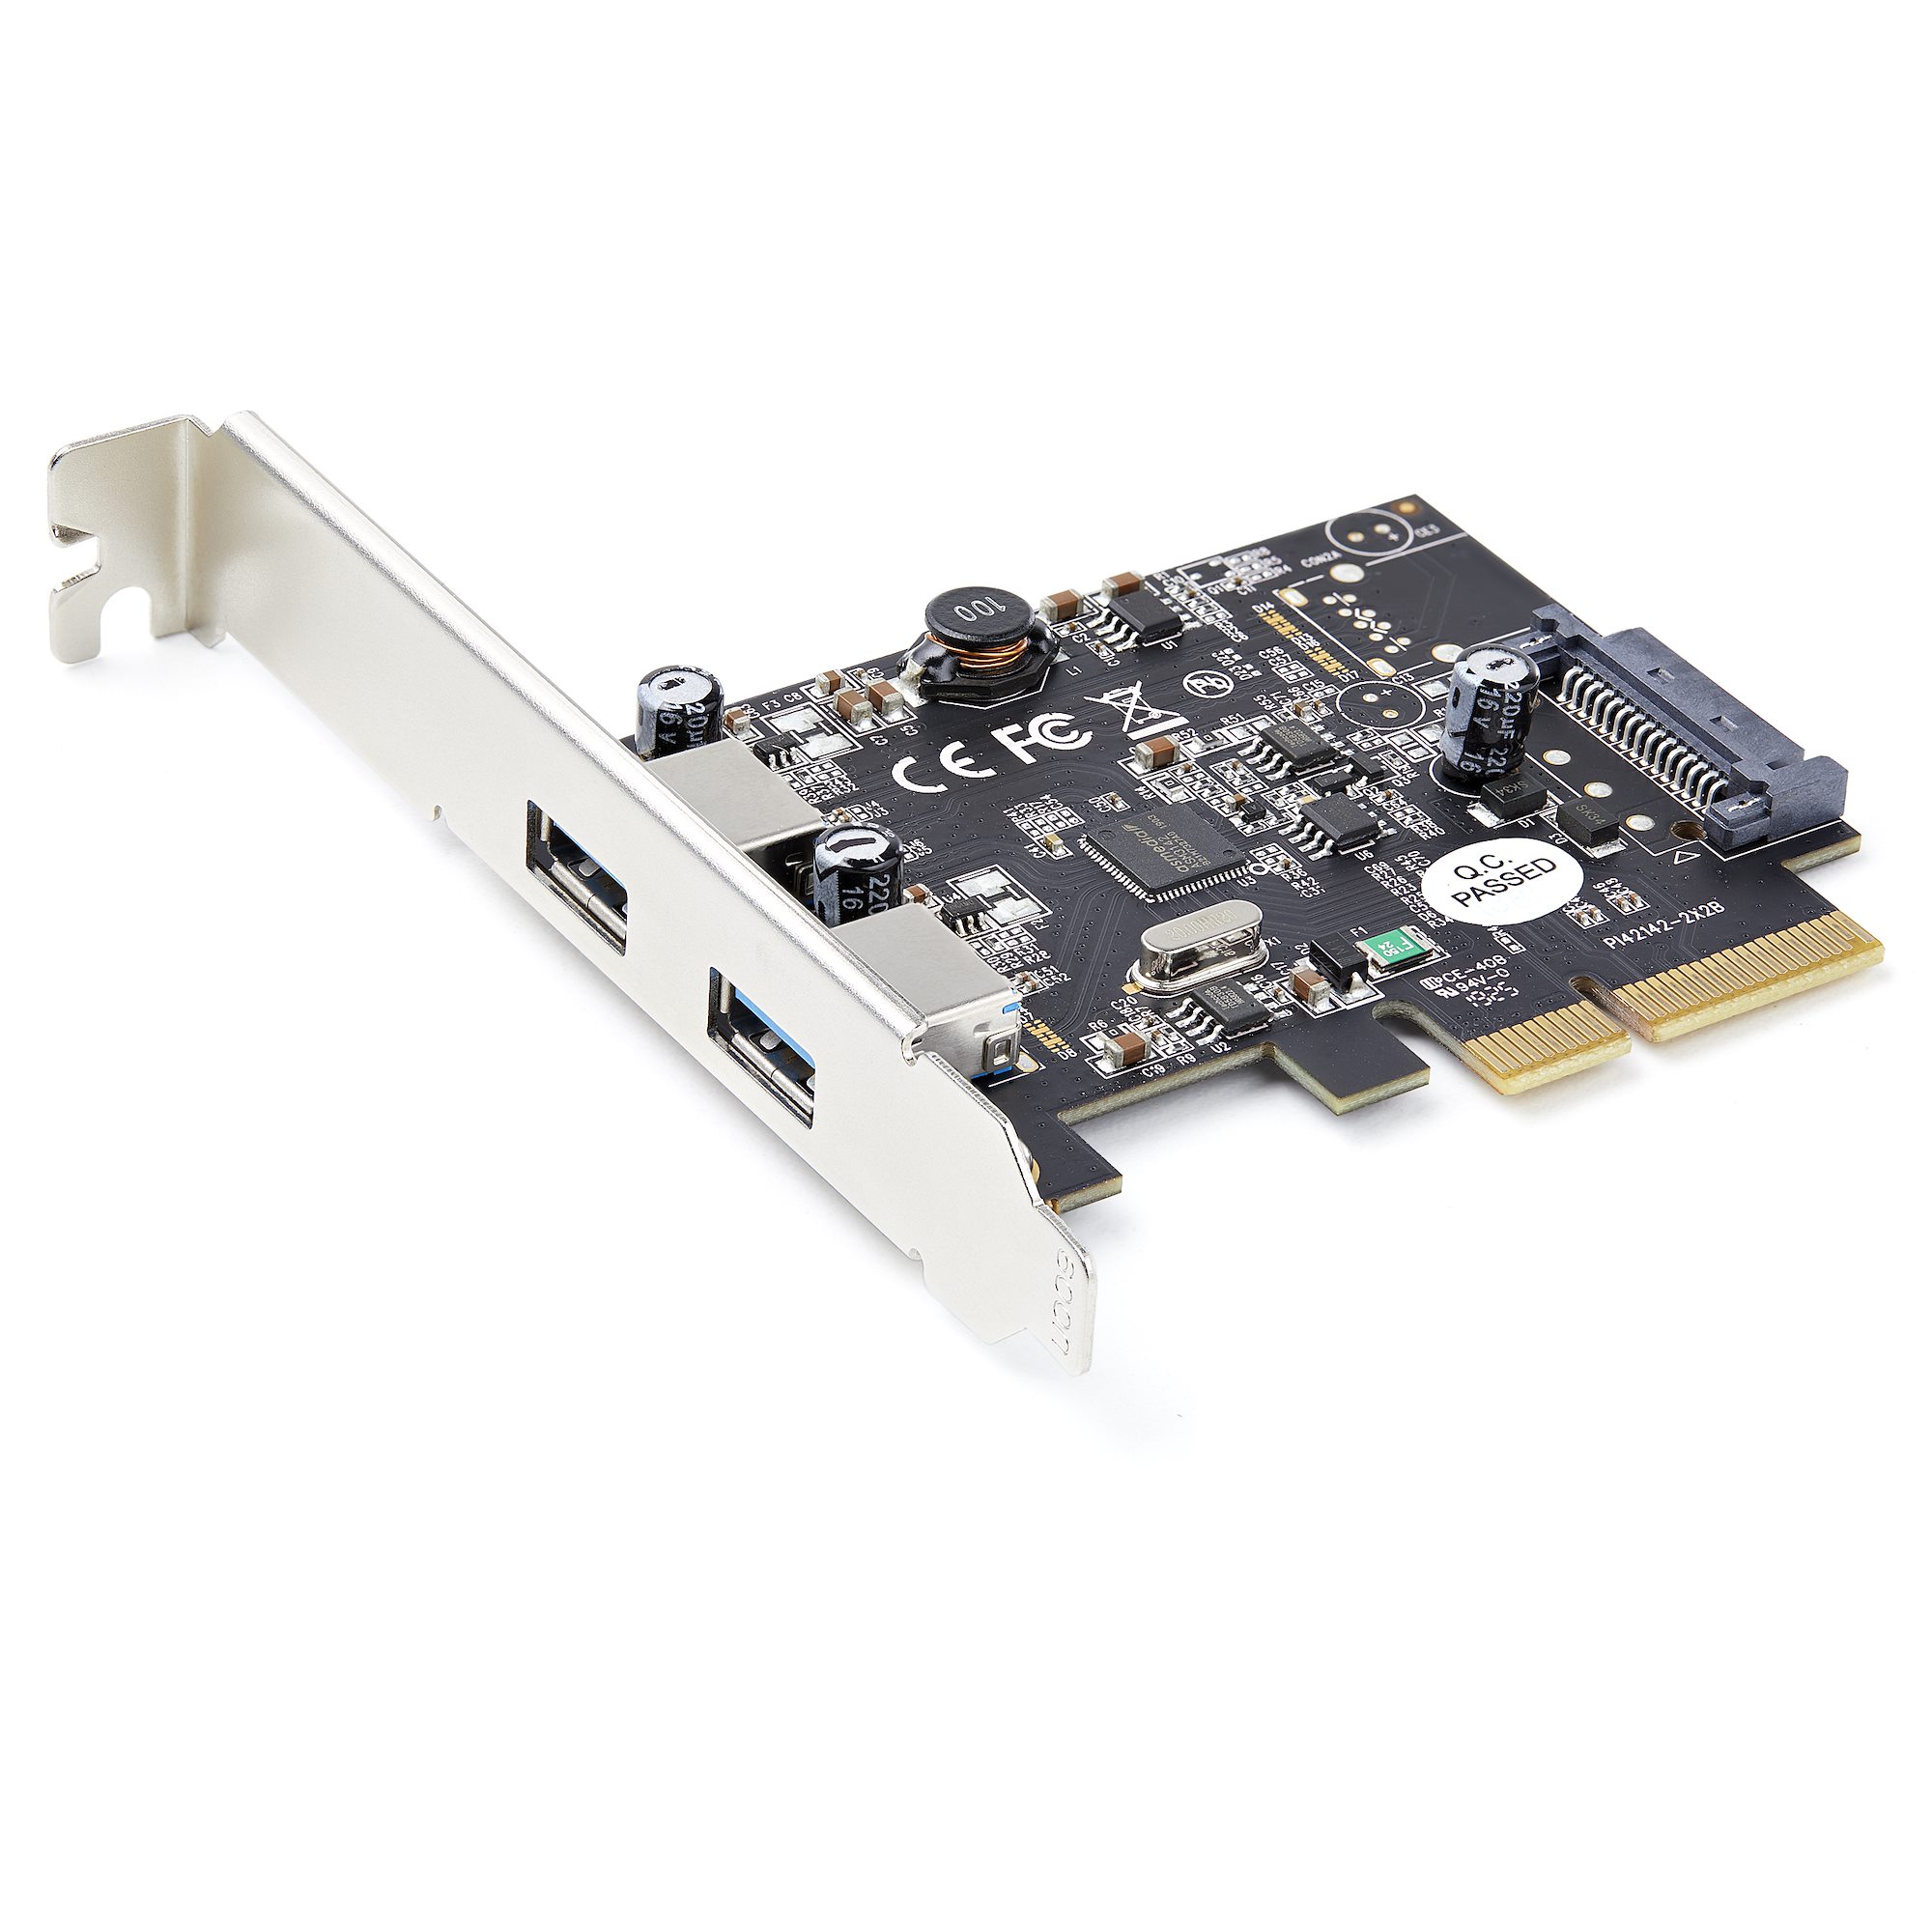 【PEXUSB312A3】2-PORT USB 3.2 GEN 2 PCIE CARD -